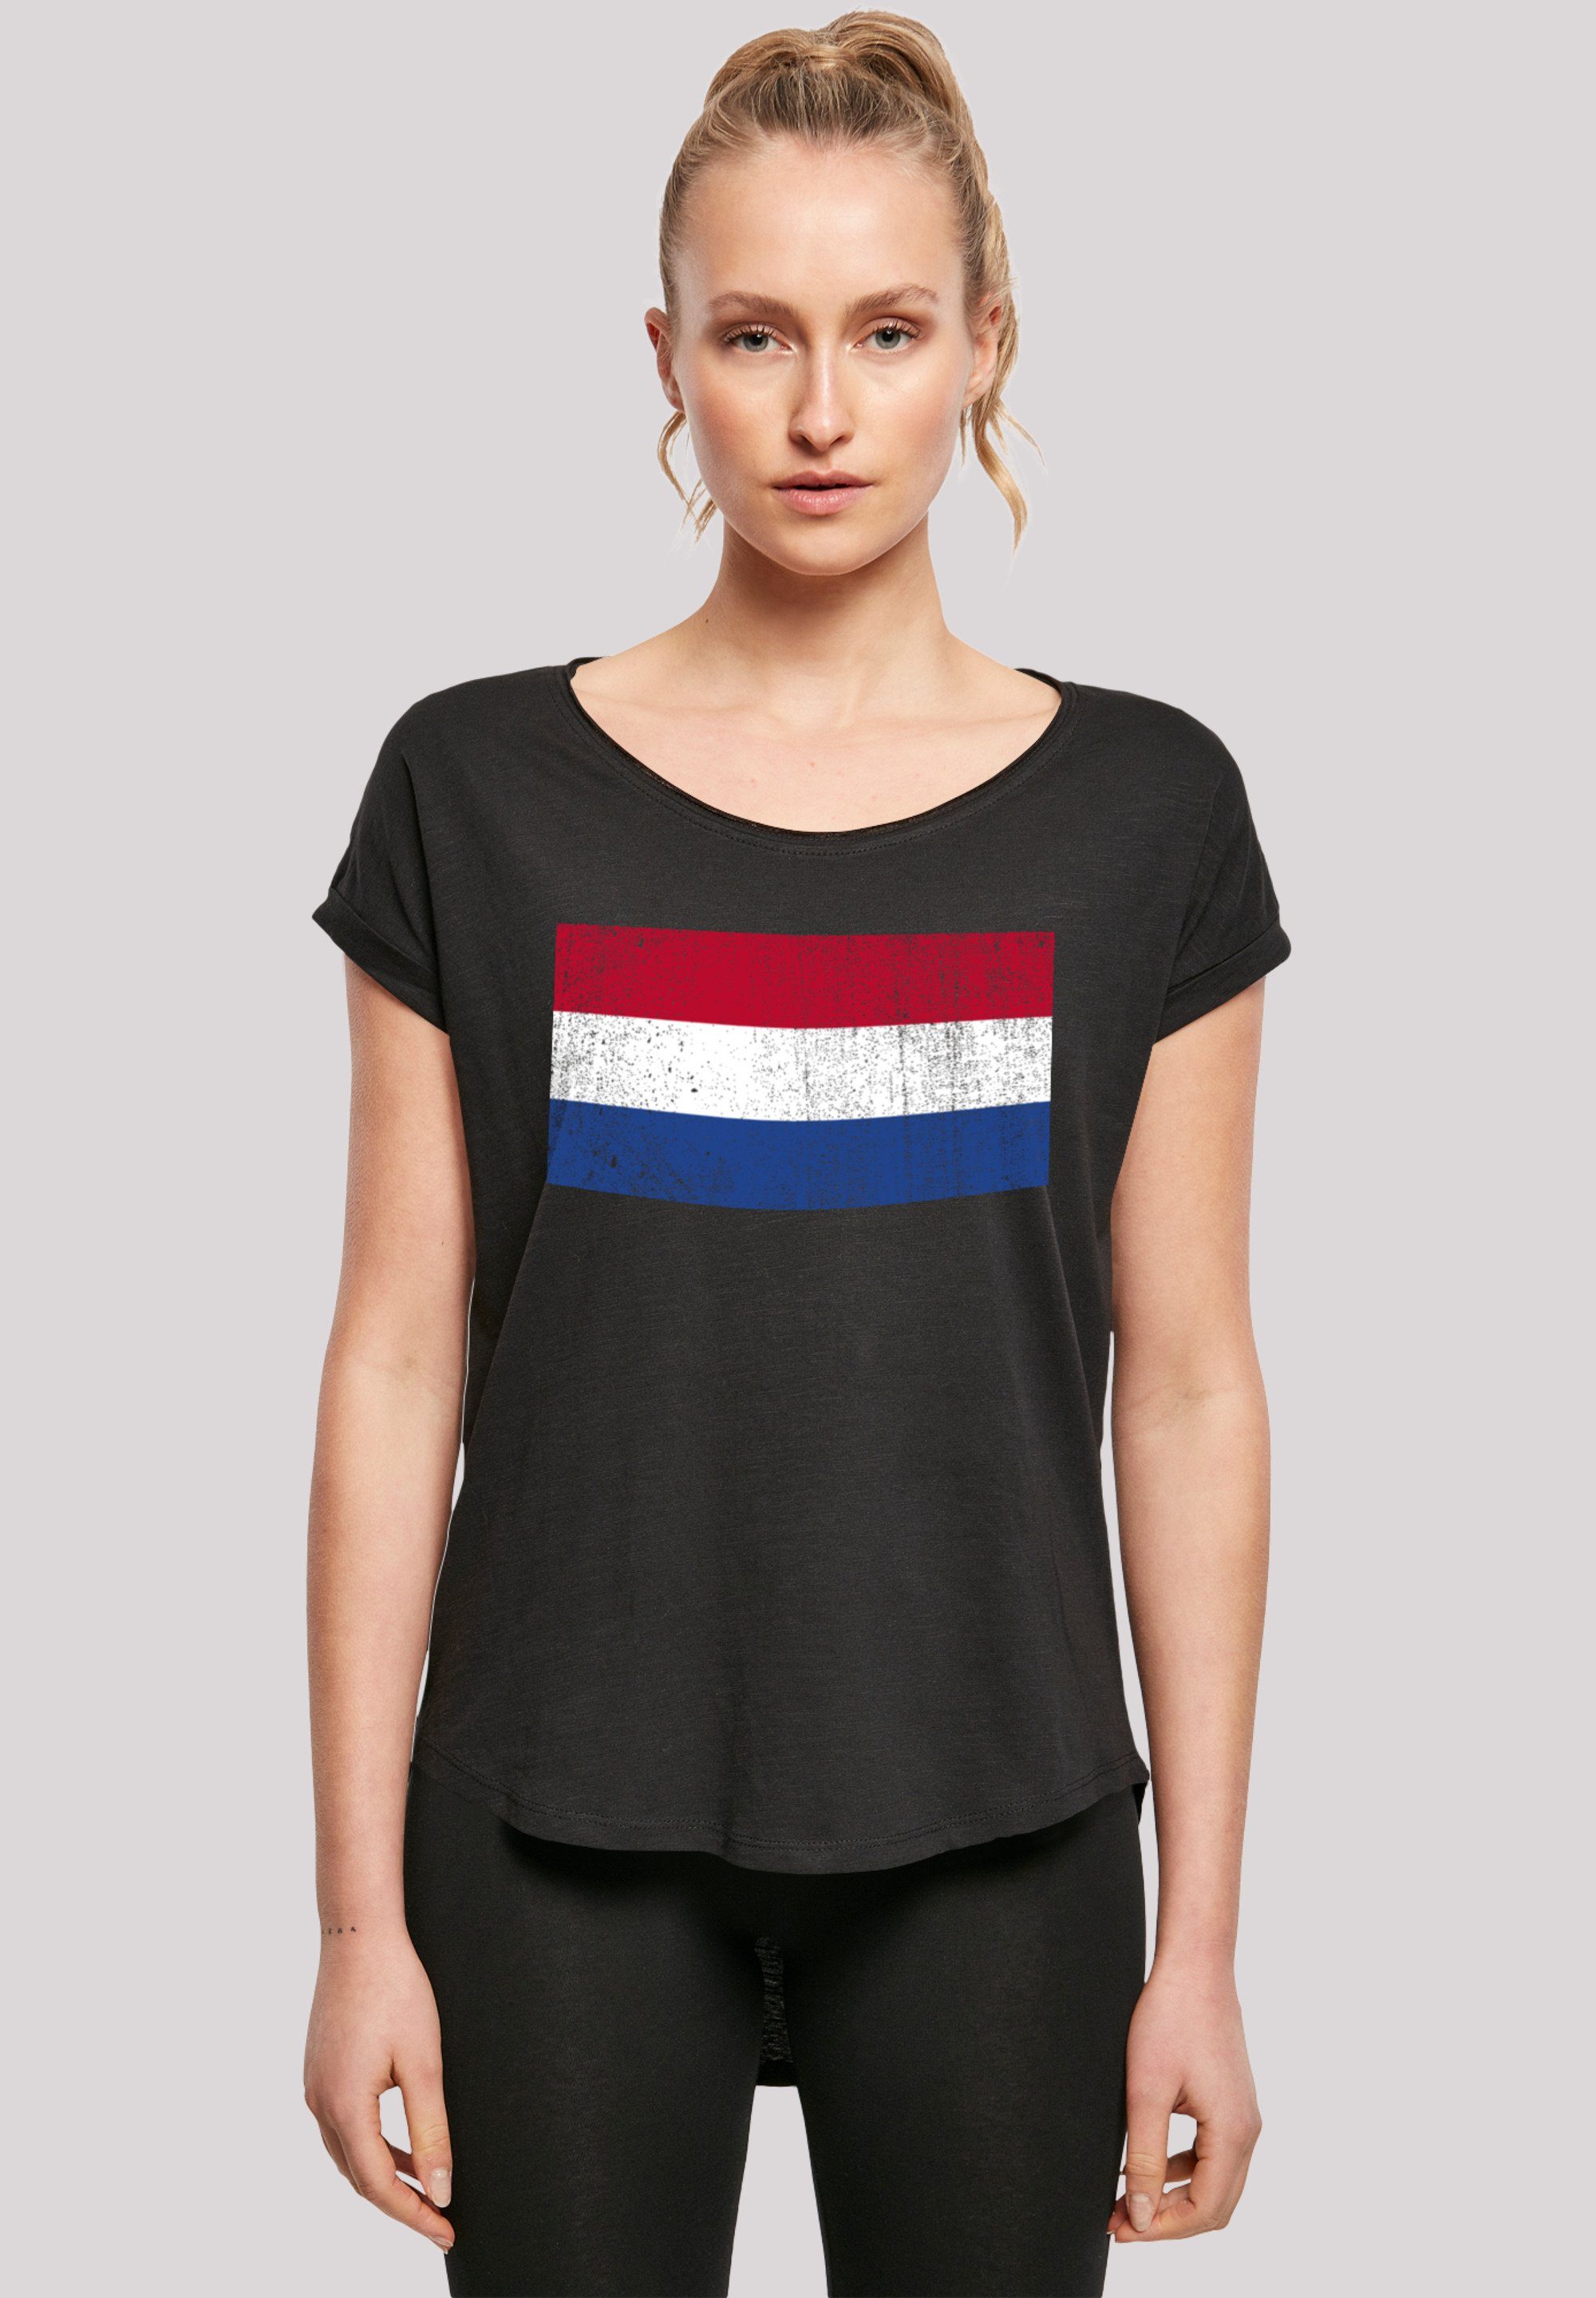 F4NT4STIC T-Shirt Holland mit NIederlande Netherlands Baumwollstoff Tragekomfort distressed Print, Sehr Flagge hohem weicher